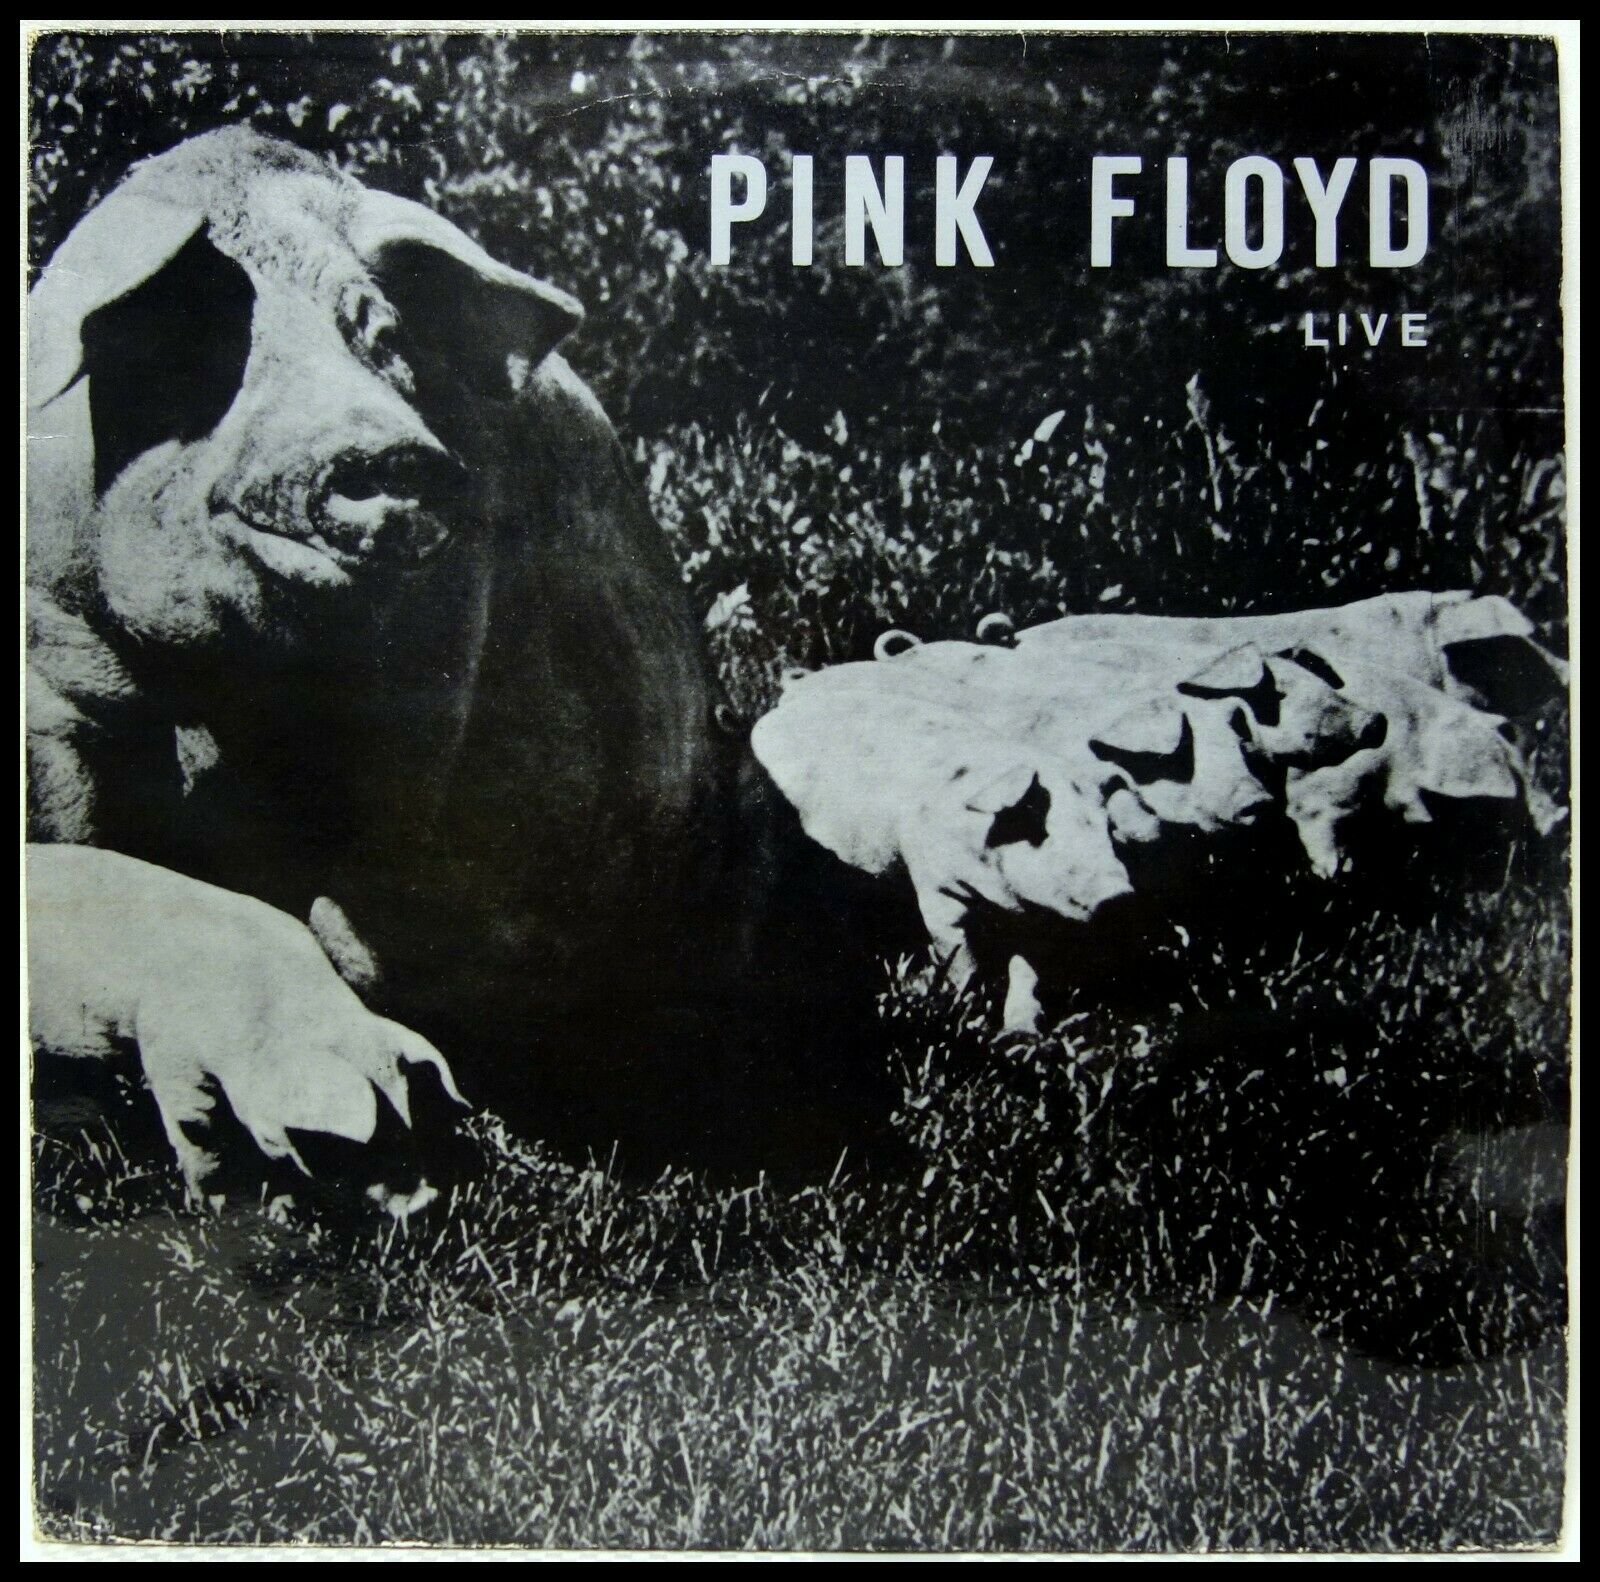 Pink Floyd in '72: Live Before 'Dark Side